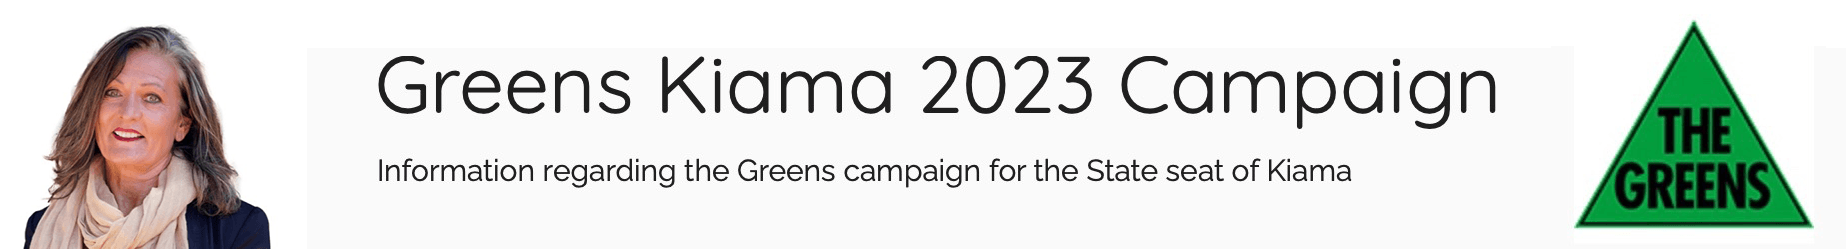 Greens Kiama 2023 Campaign